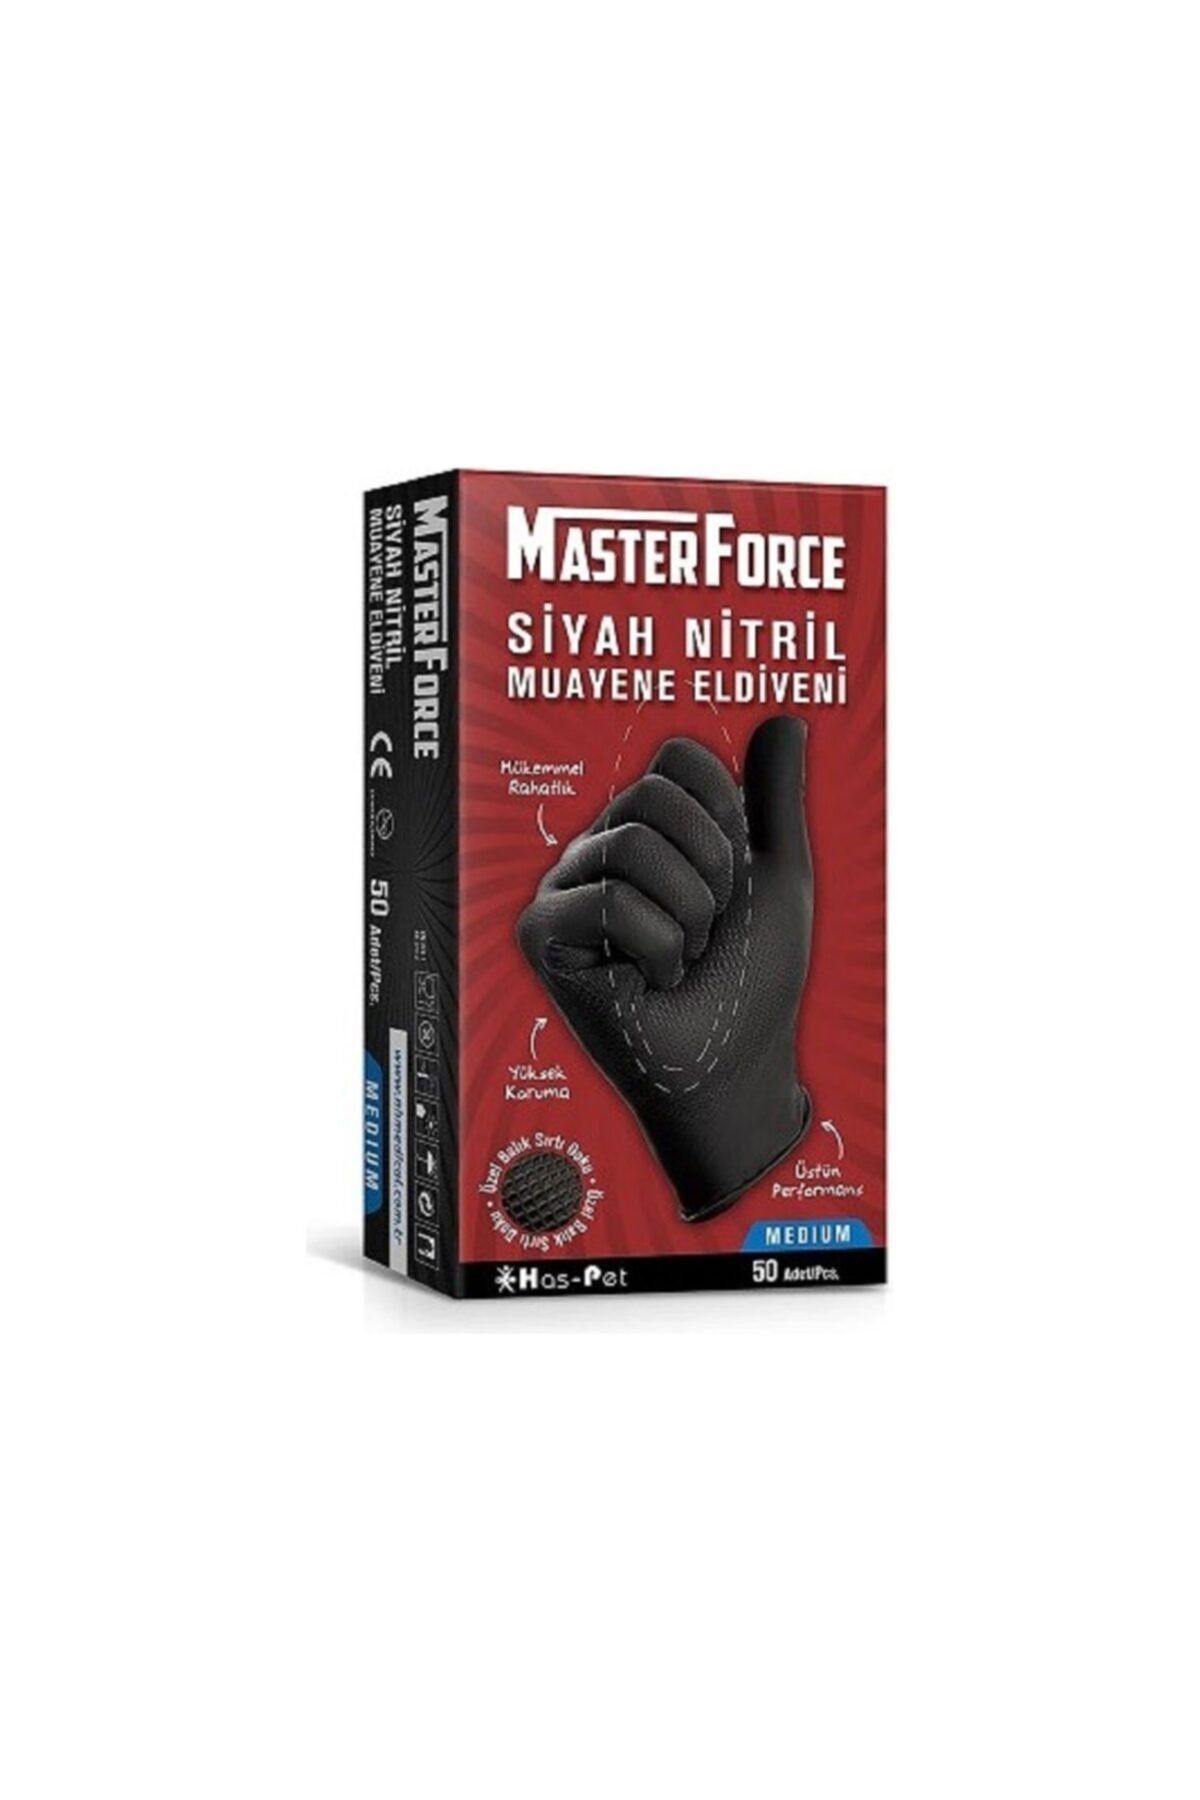 Has-Pet Masterforce Siyah Nitril Eldiven M (MEDİUM) Beden 50'li Paket